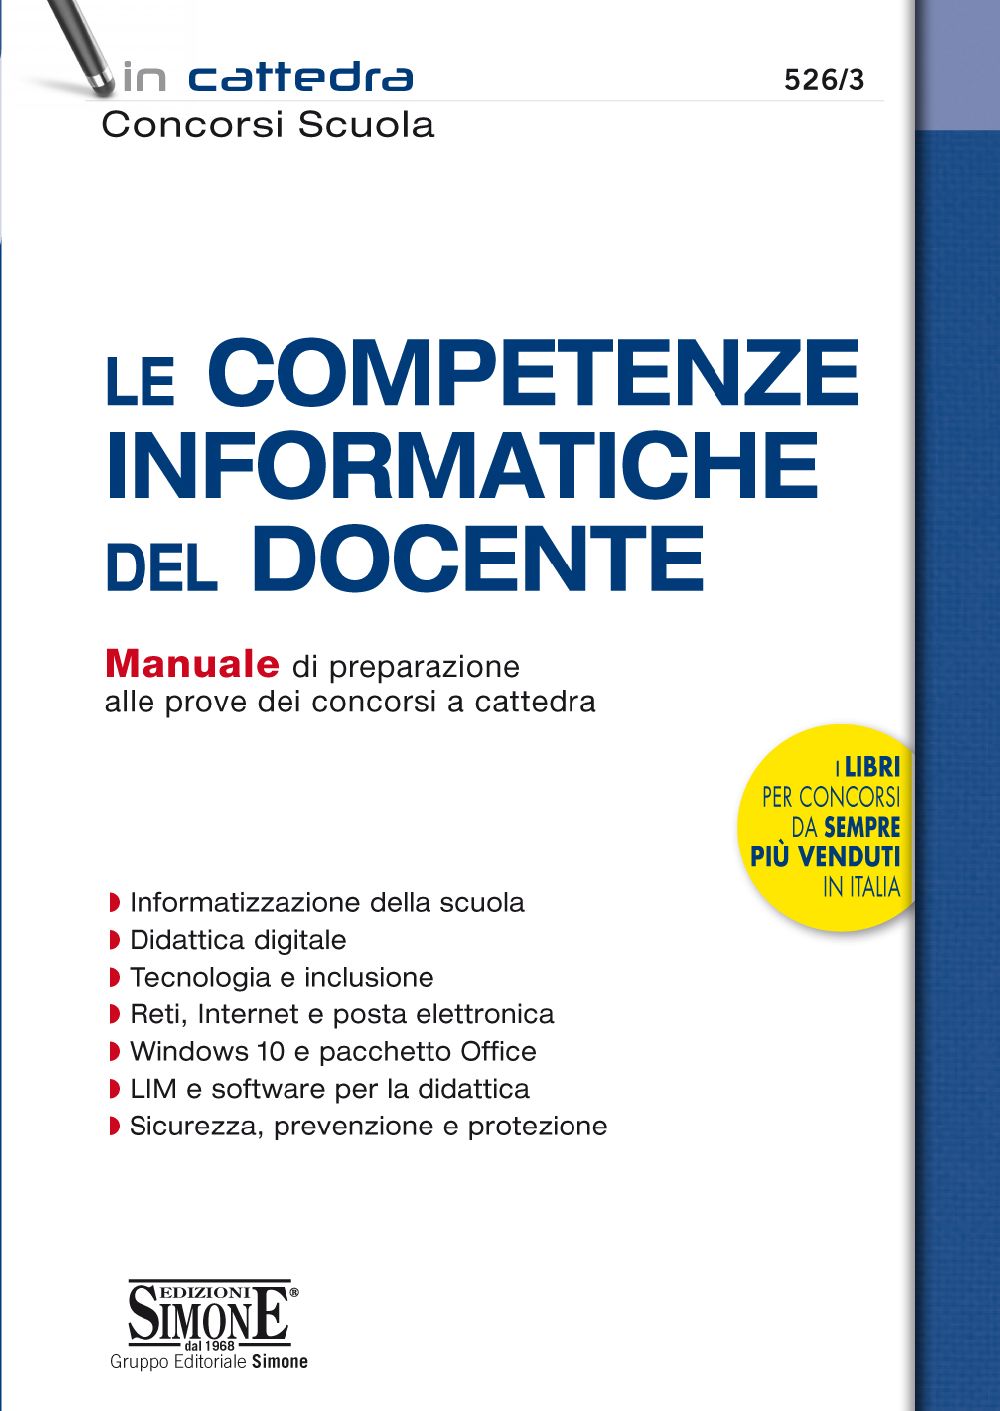 Le Competenze Informatiche del Docente - 526/3